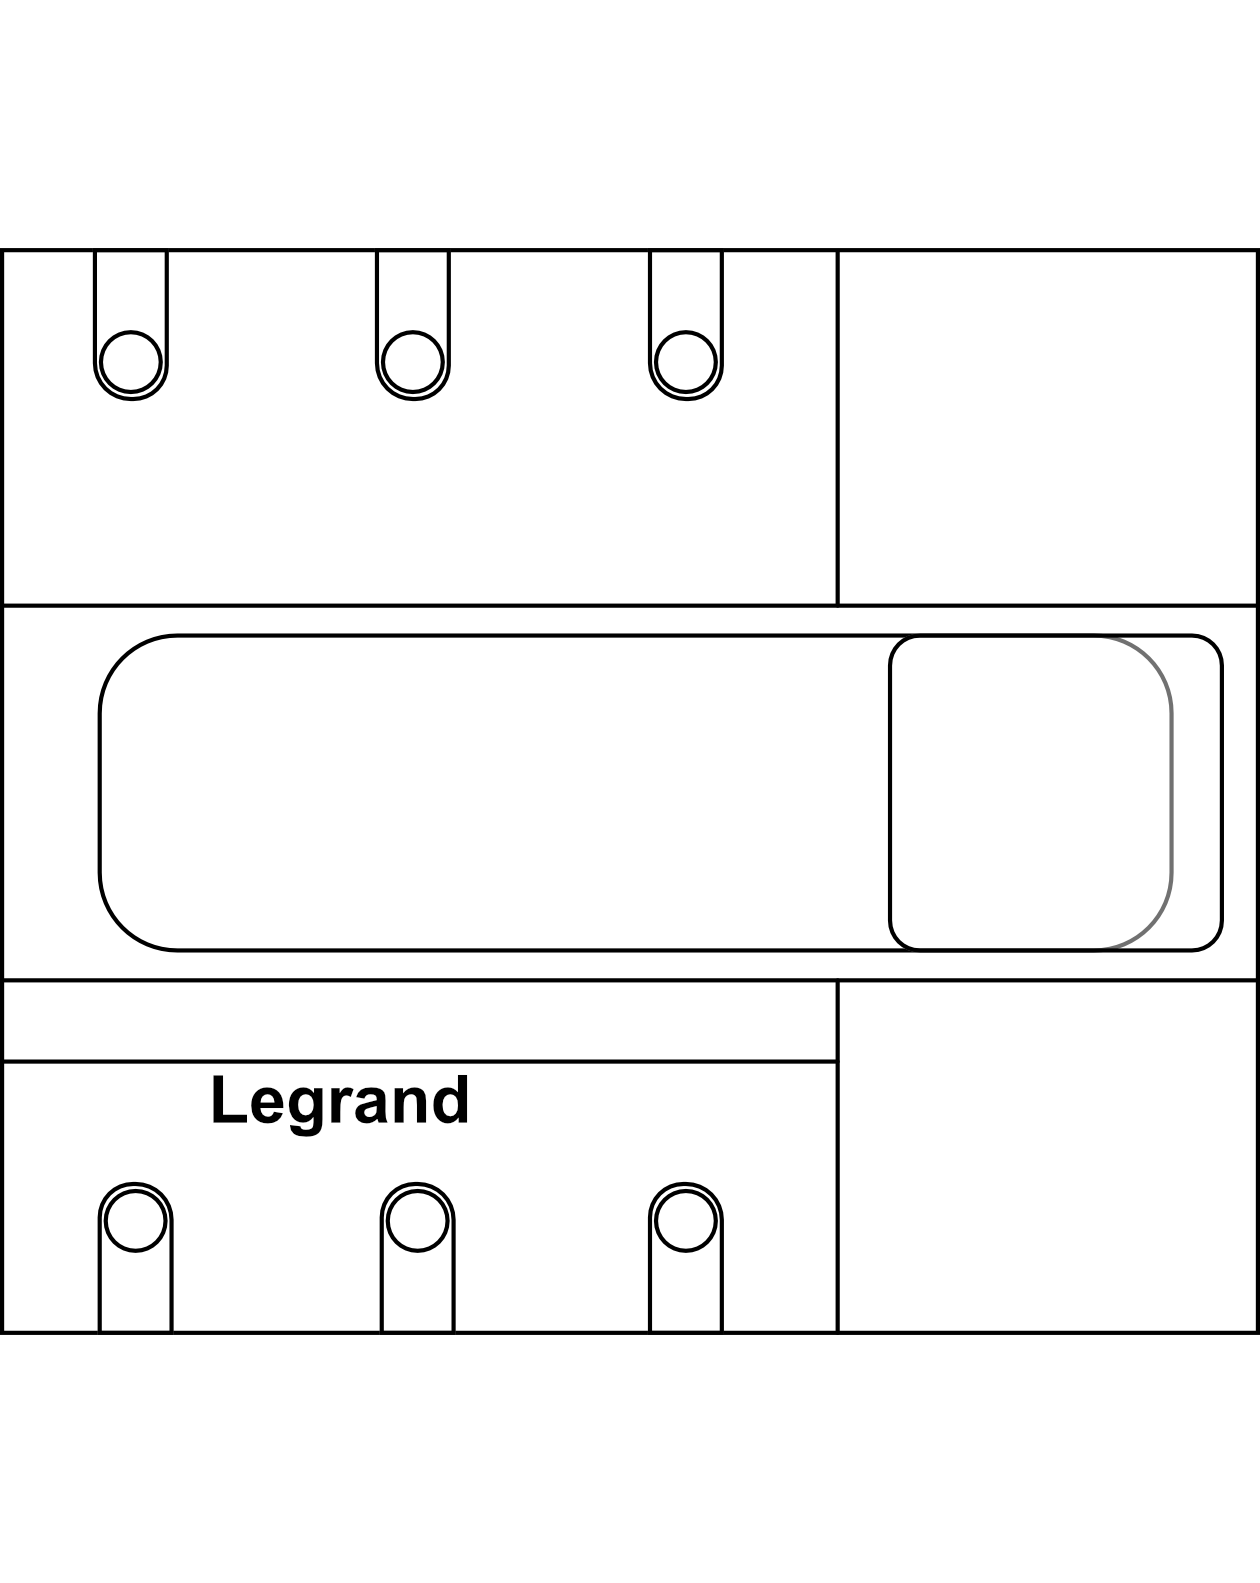 Výkonový odpínač s viditelným stavem kontaktů Legrand DPXTM-IS 250D 3P do 250A s možností dálkového ovládání čelní ovládání